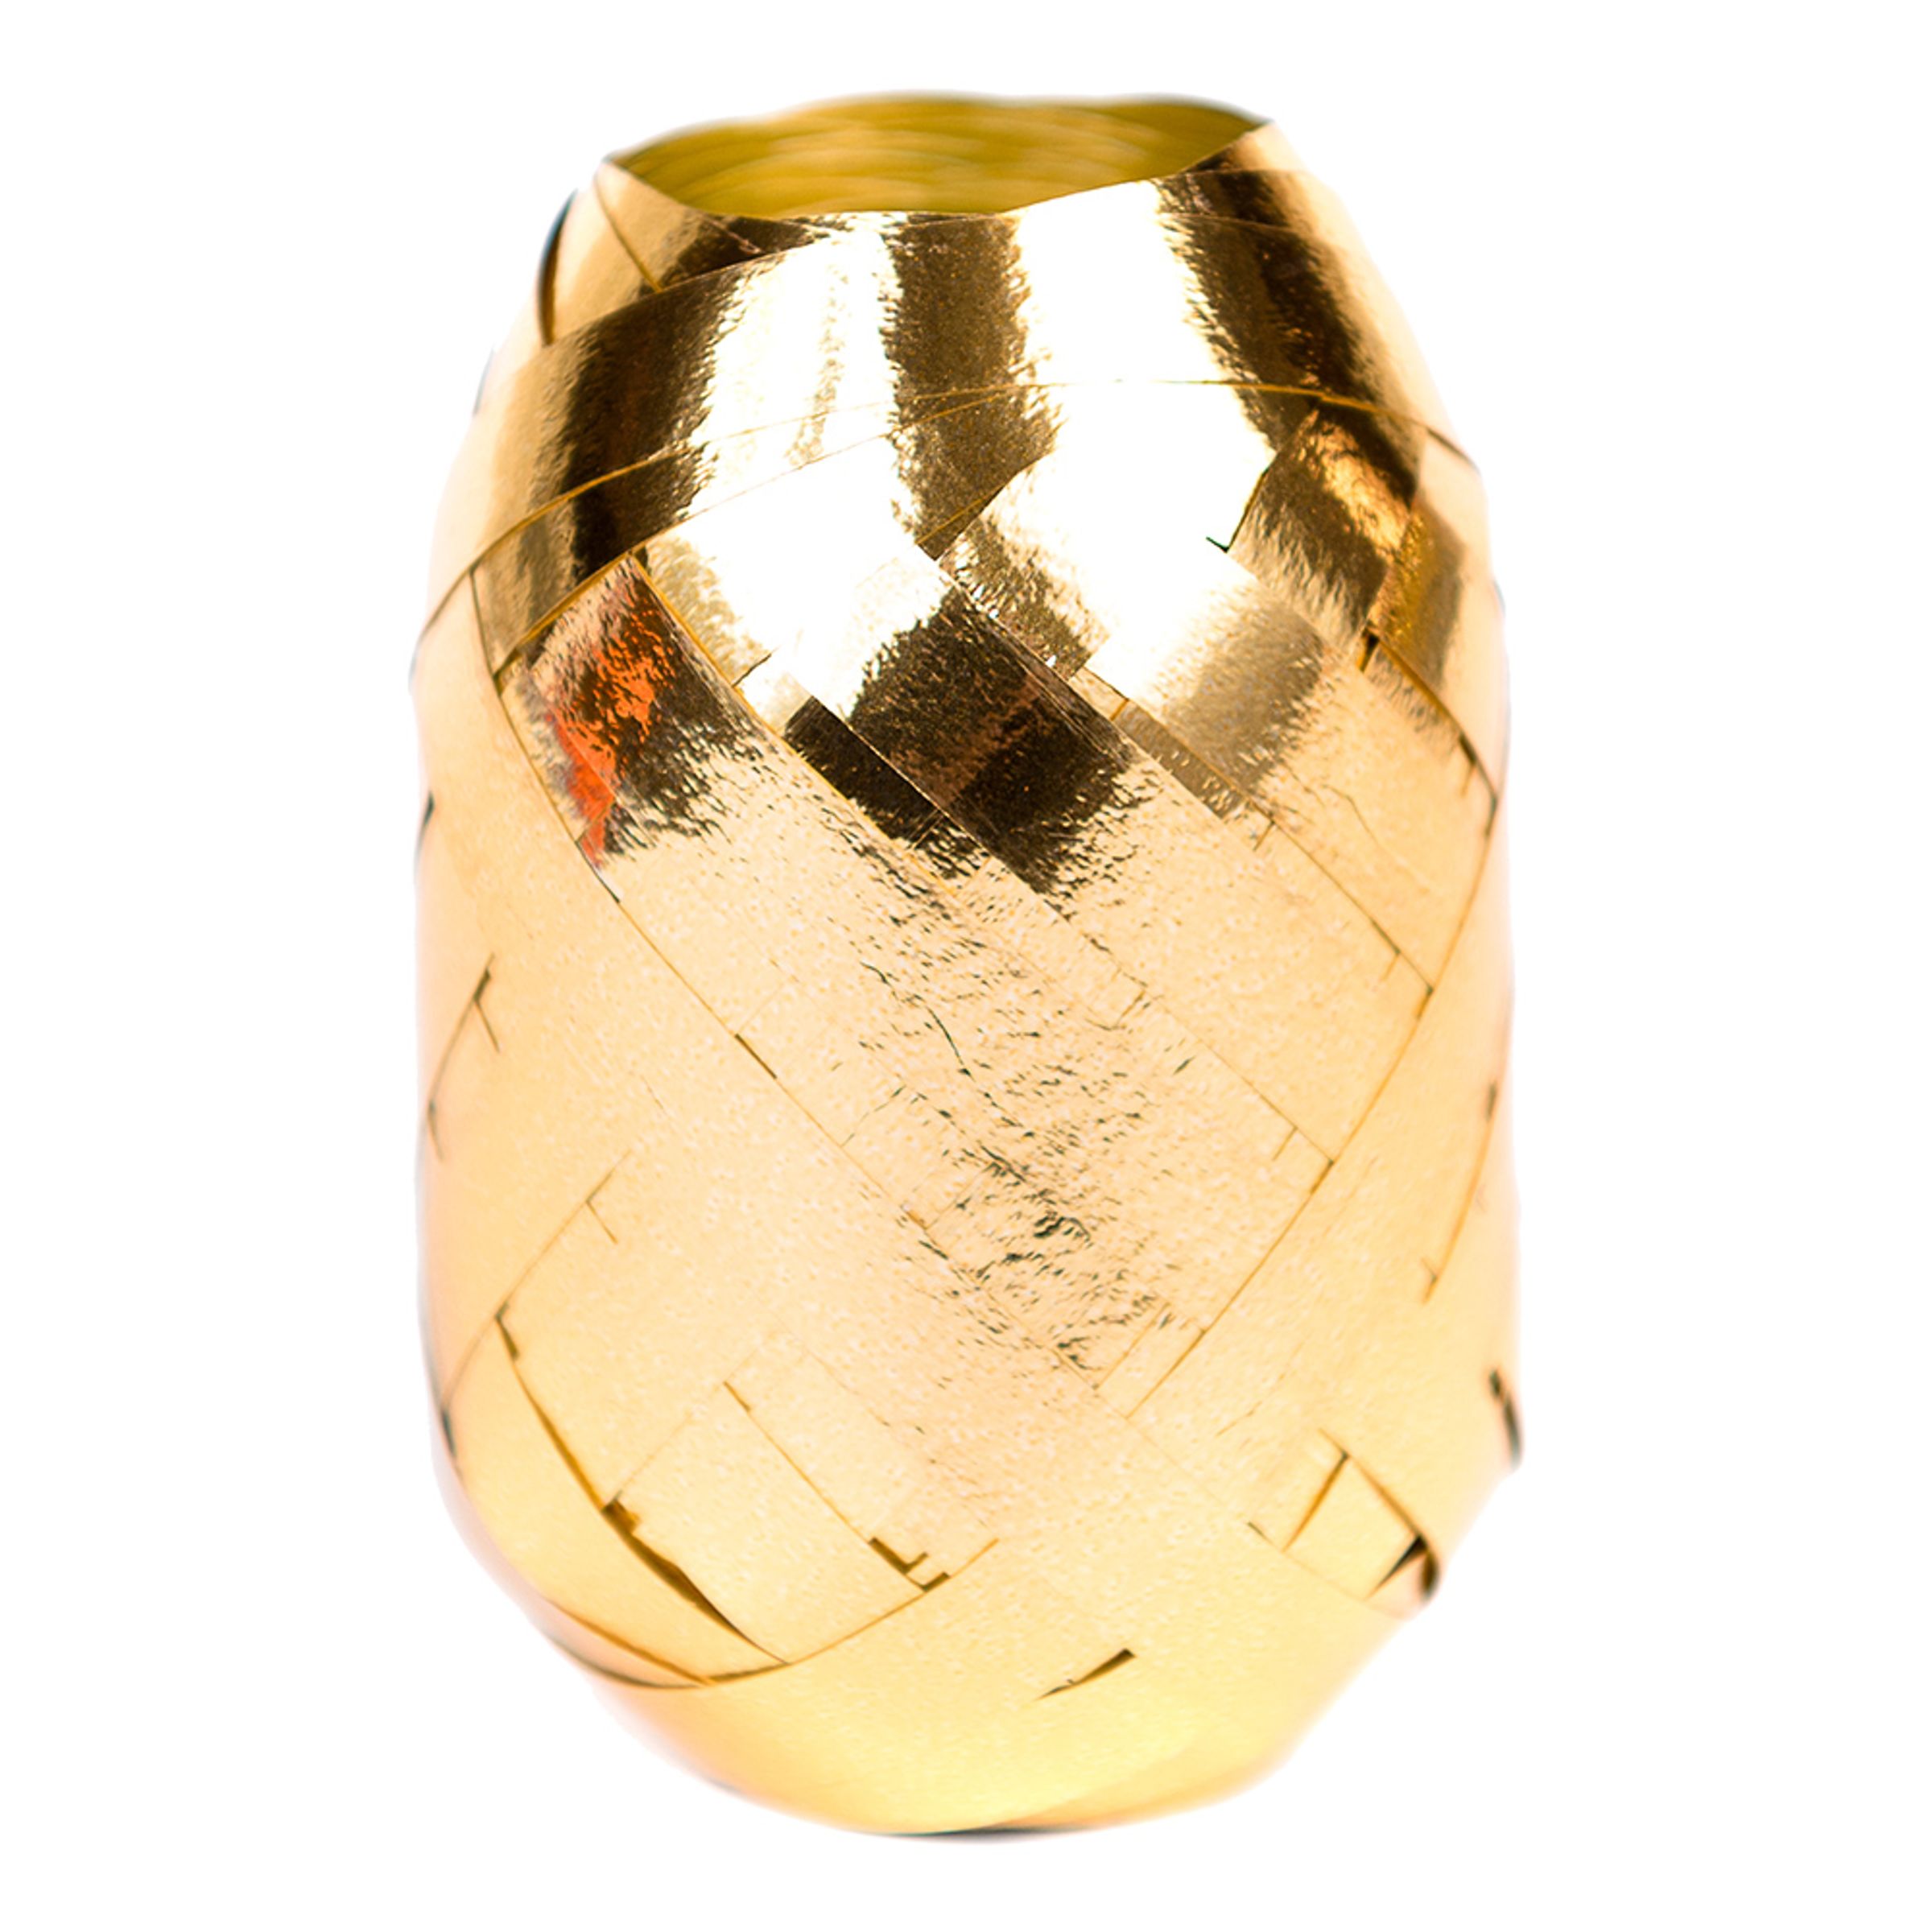 Ballongsnöre Metallic Guld - 20m * 7mm